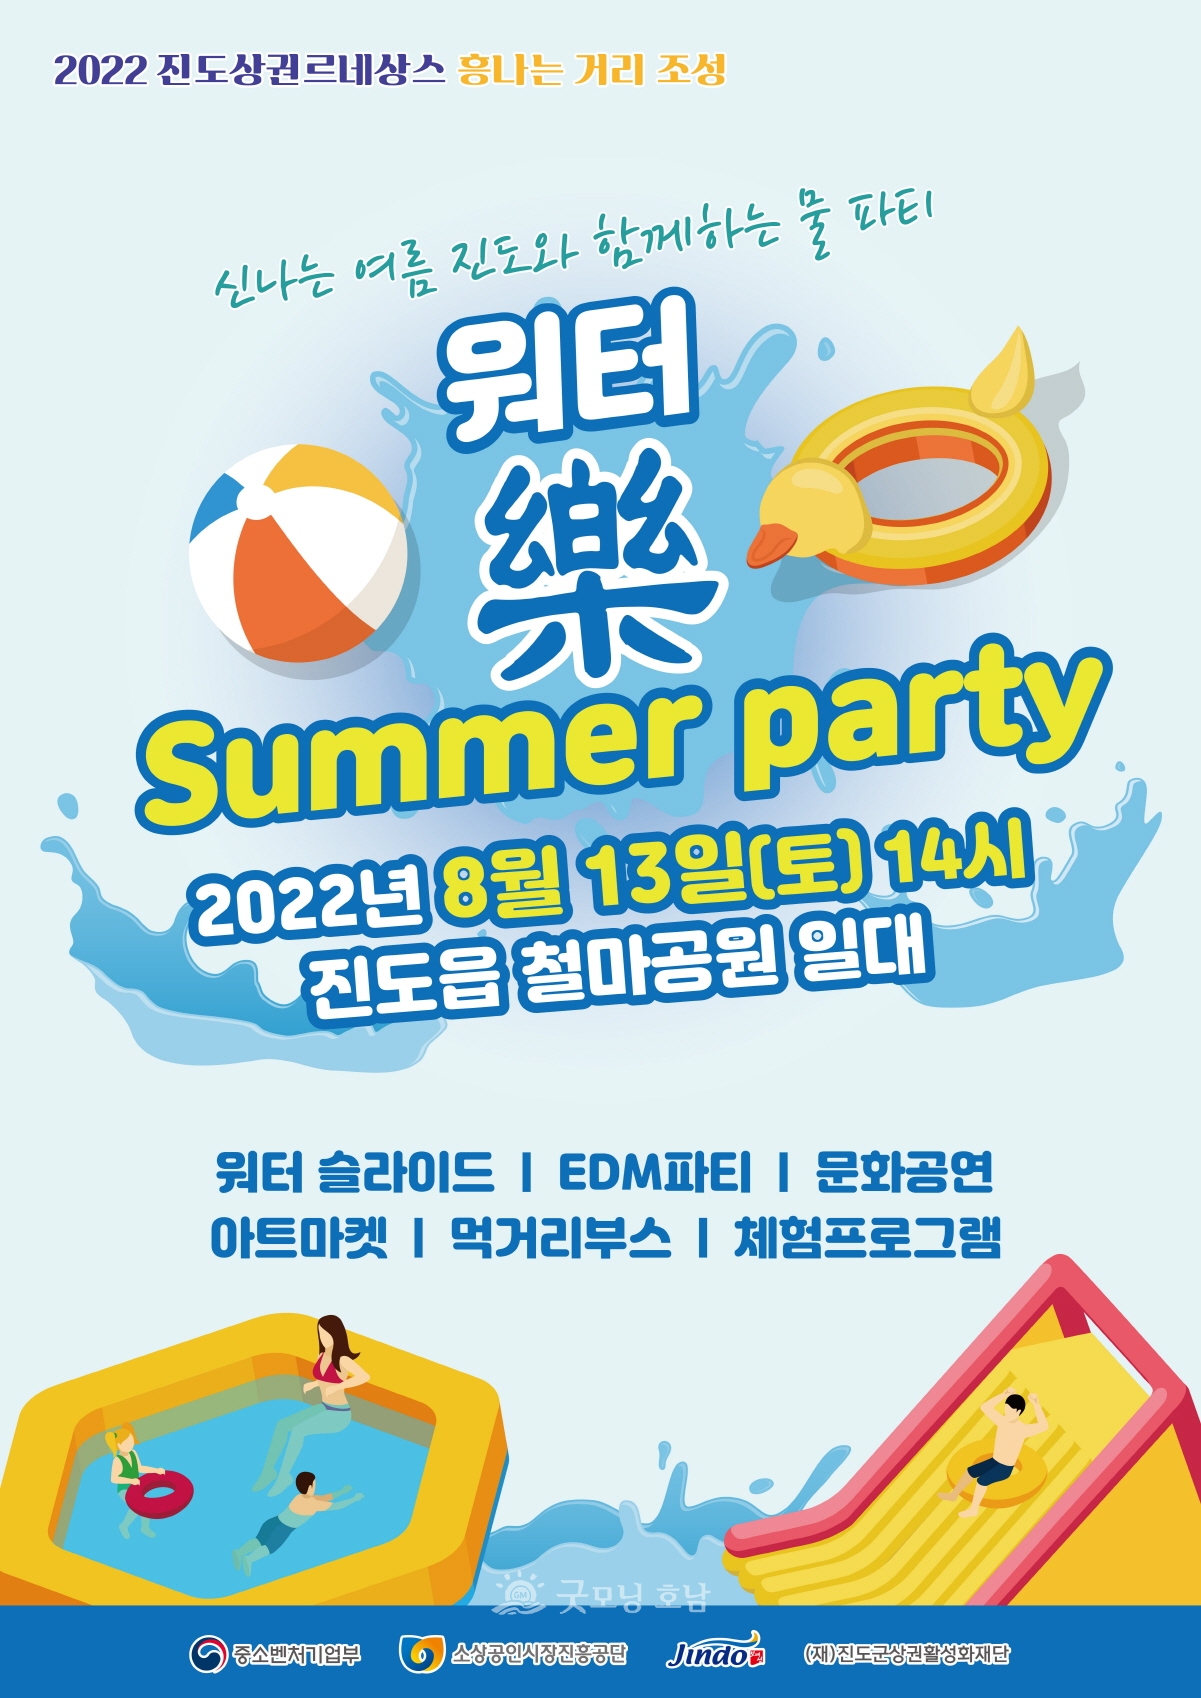 진도군, 13일(토) 오후 2시 ‘워터 樂 썸머 파티’ 개최